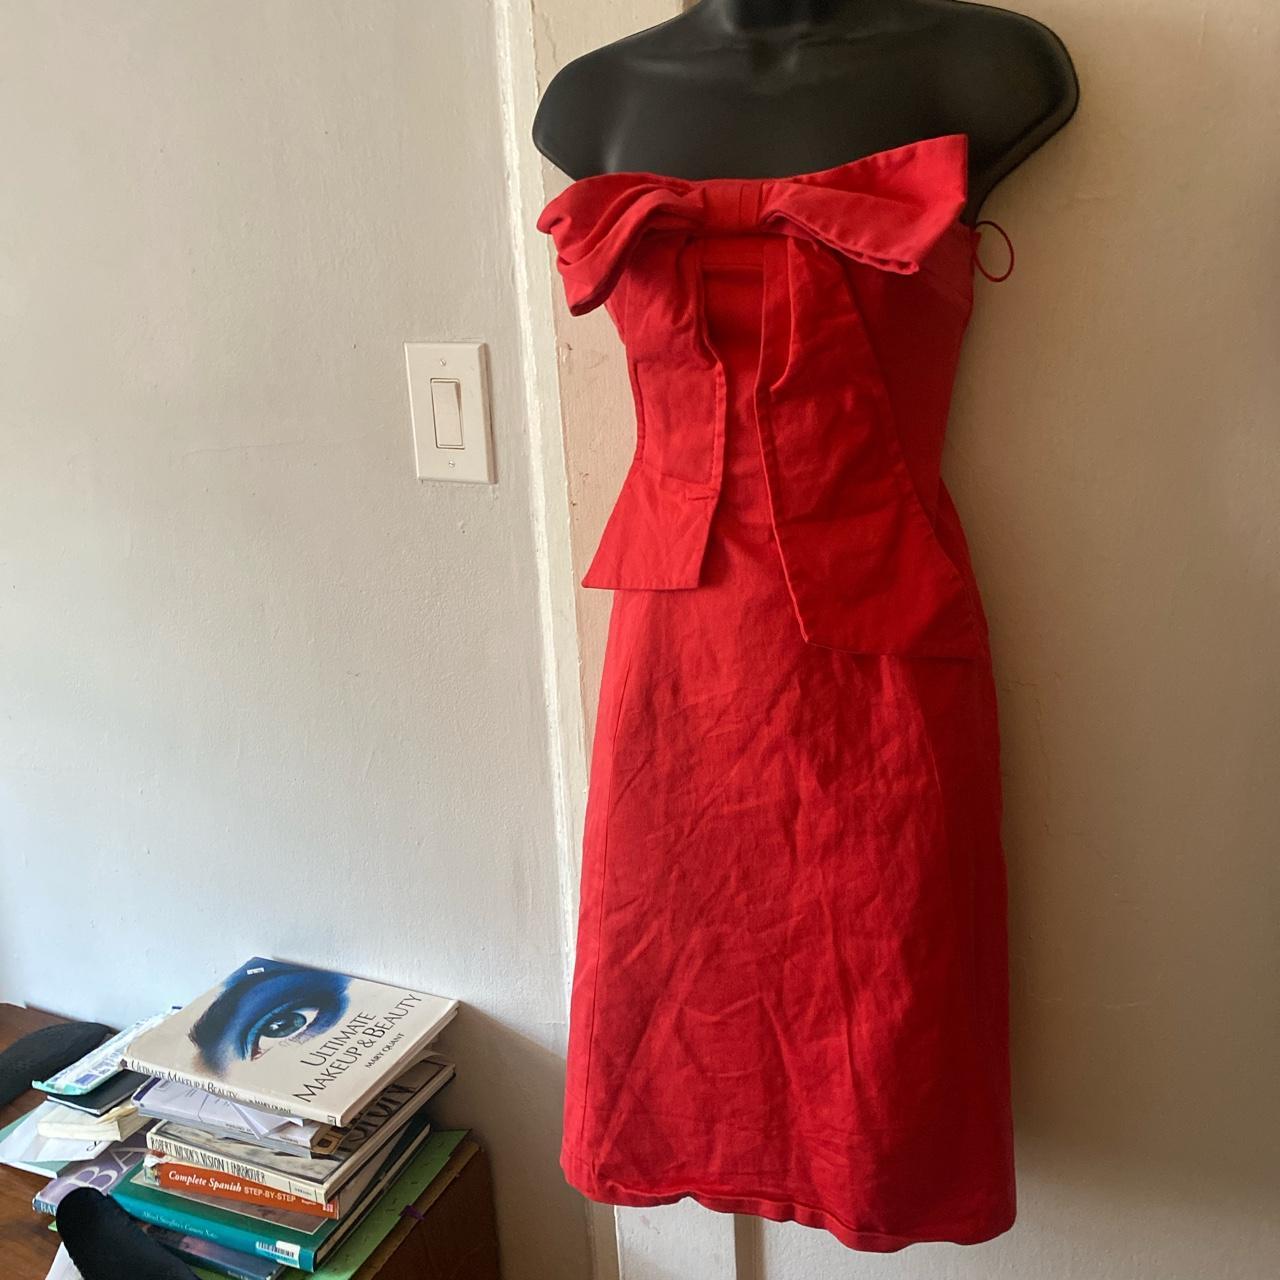 Moschino Cheap & Chic Women's Red Dress